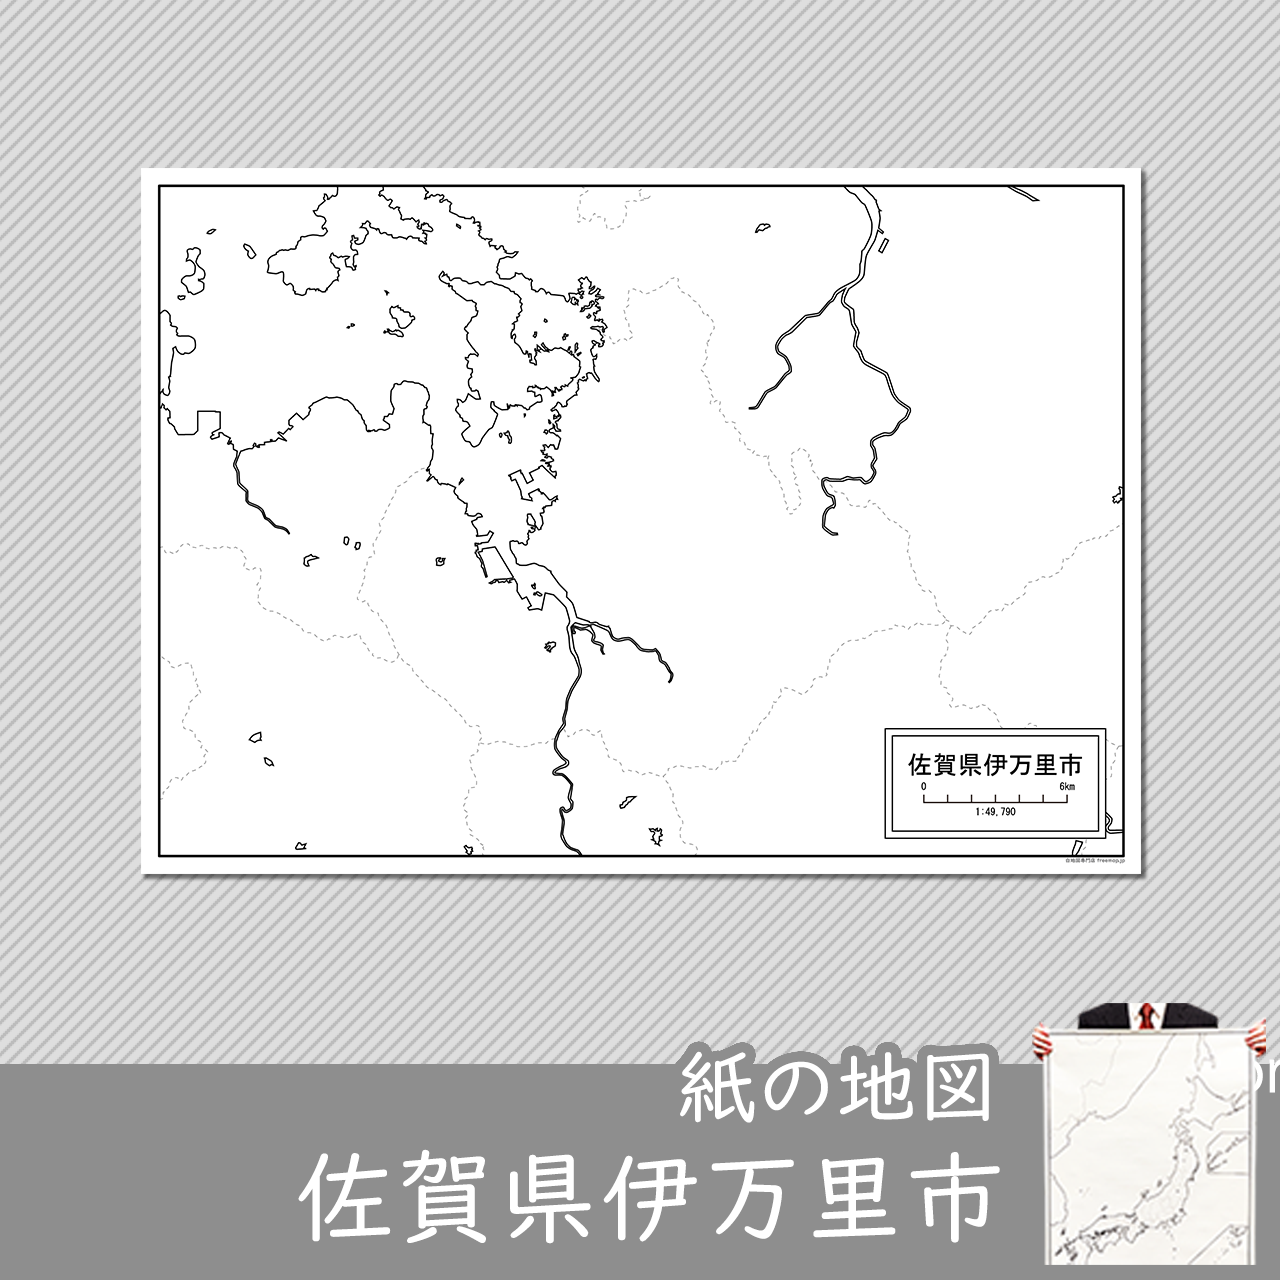 伊万里市の紙の白地図のサムネイル